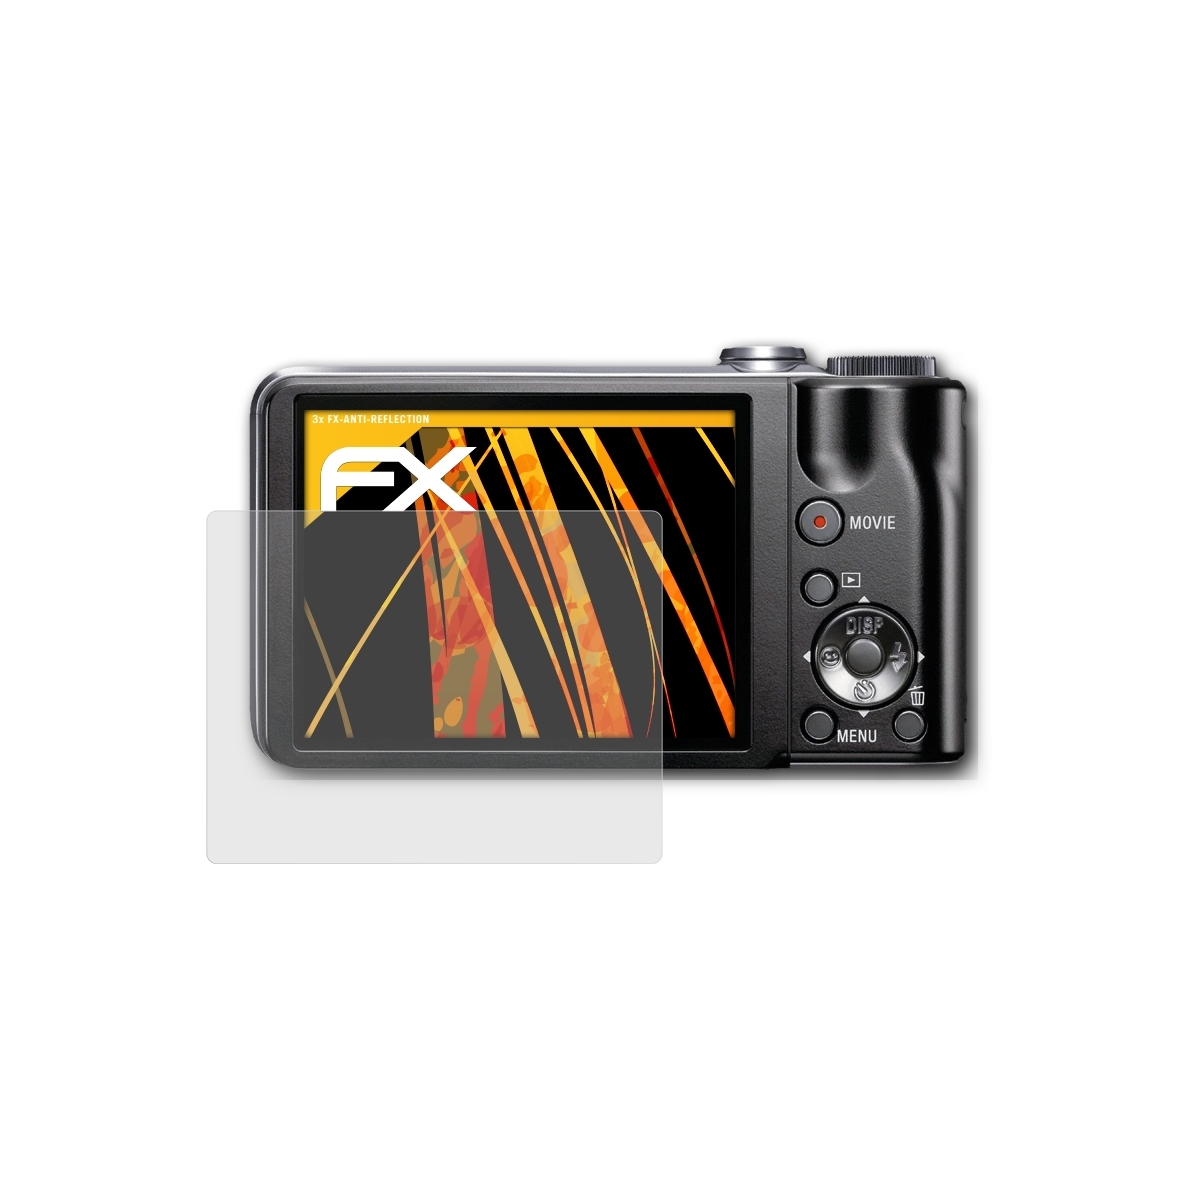 FX-Antireflex ATFOLIX Sony 3x DSC-HX5V) Displayschutz(für